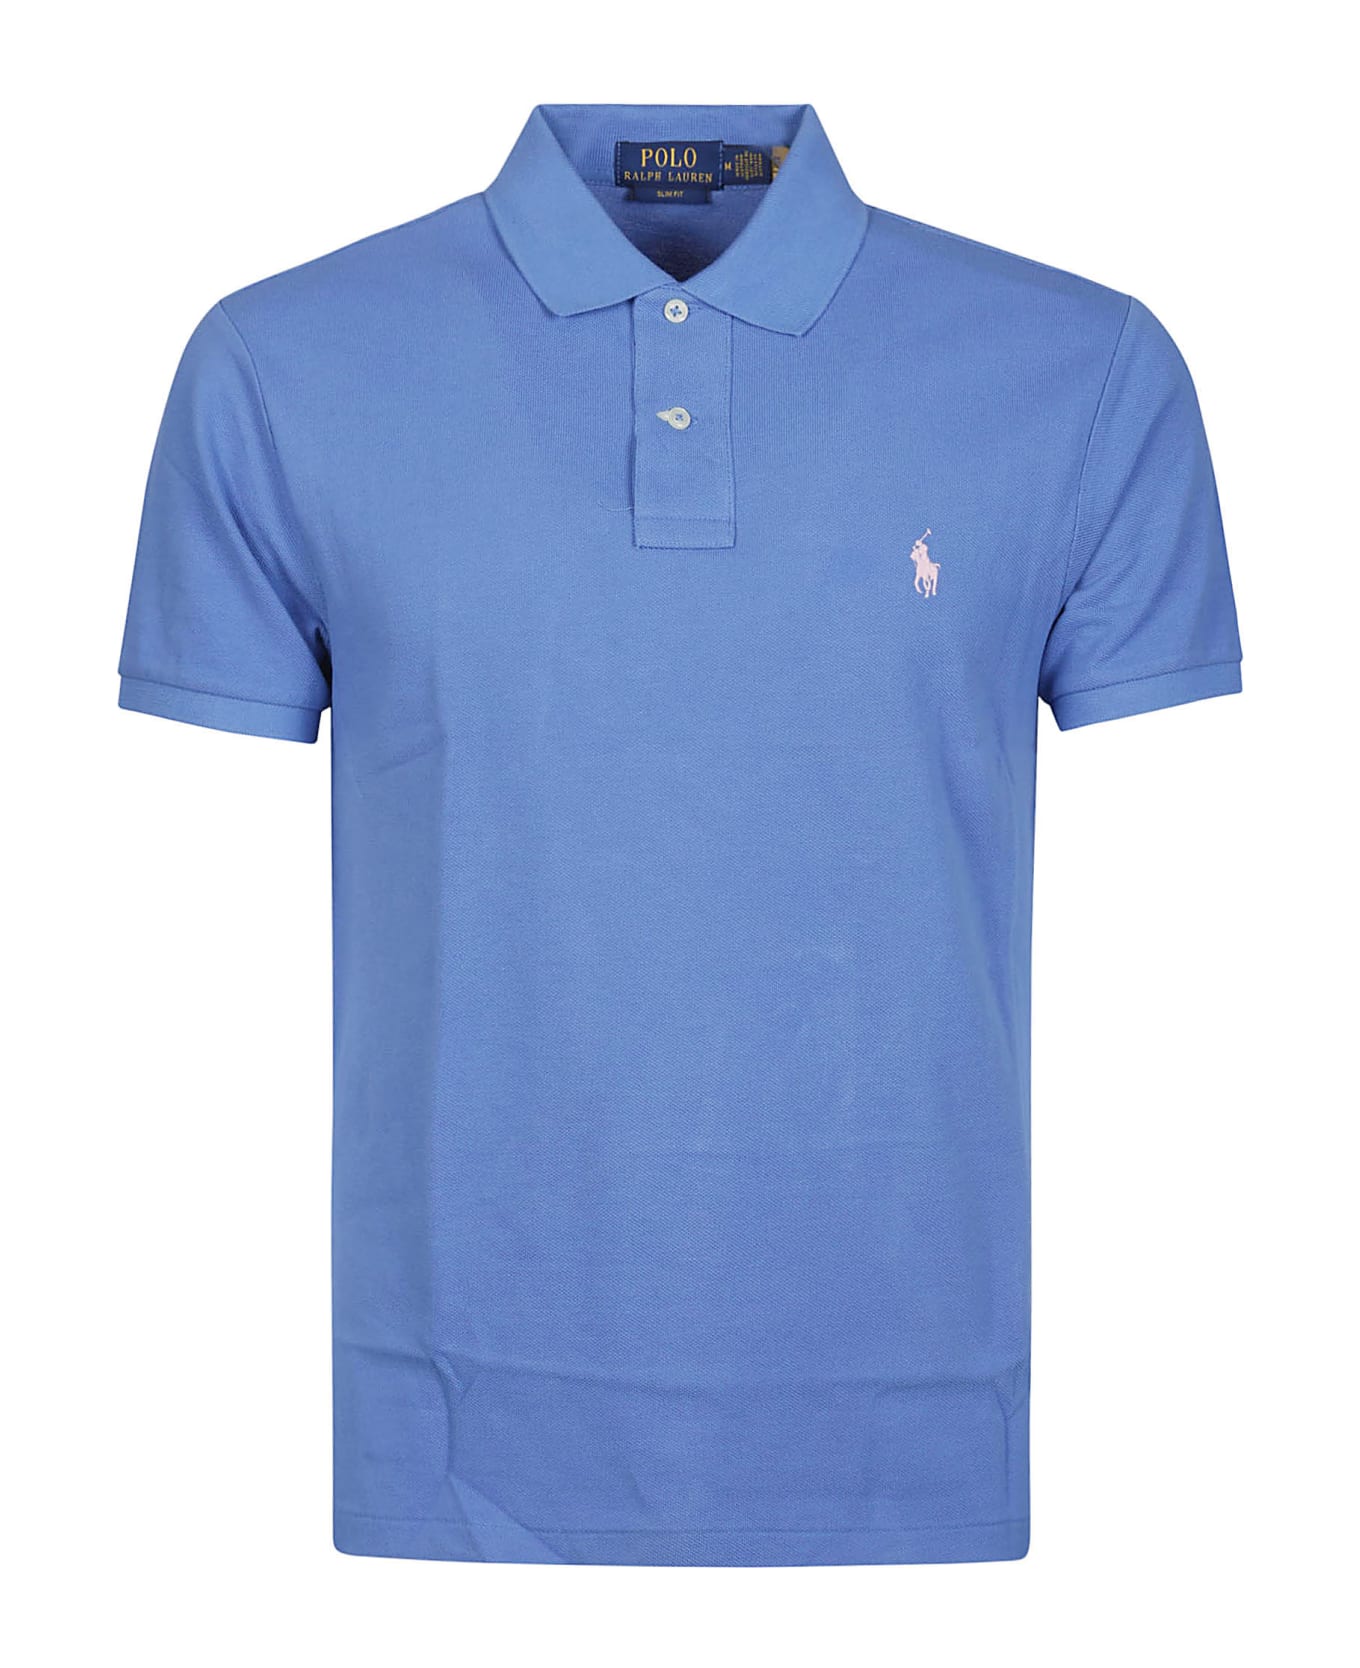 Ralph Lauren Short Sleeve Polo Shirt - New England Blue